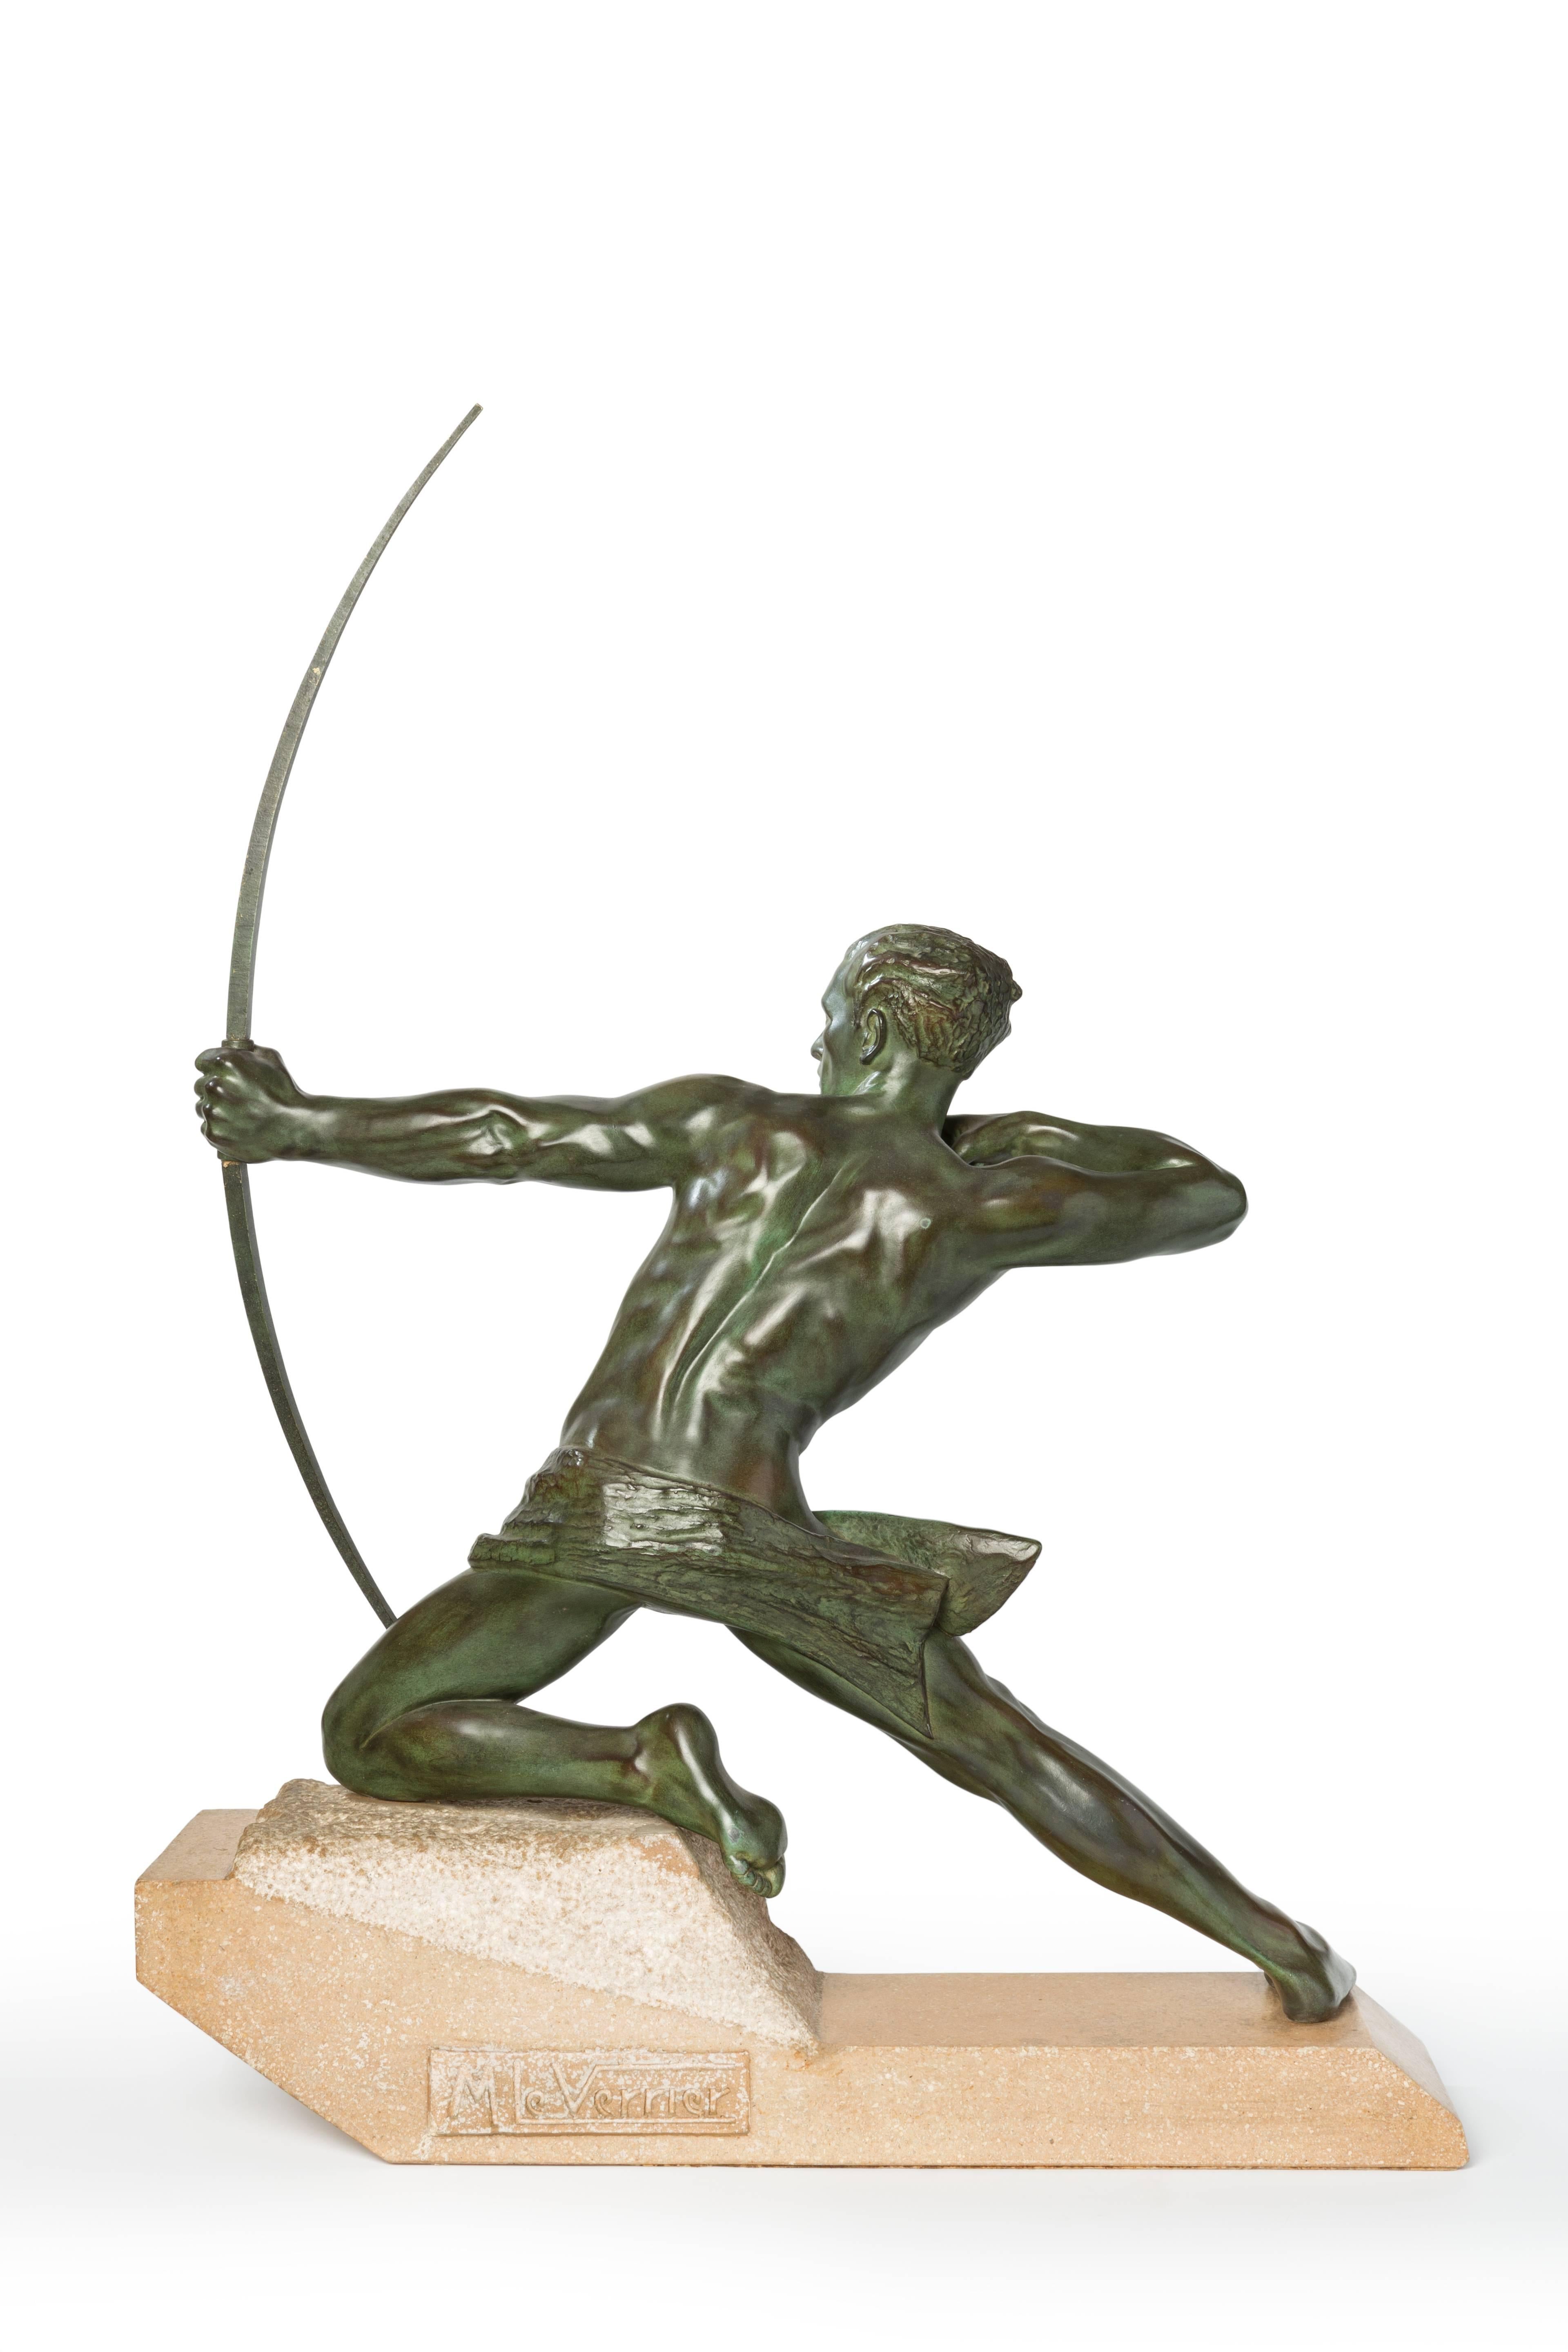 Sculpture française Art déco de Max Le Verrier ( 1891-1973 ). Bronze vert patiné sur socle en granit. Signé sur la base : M. Le Verrier.
Dimensions : Hauteur : 29.92 in ( 76 cm ), Largeur : 22.44 in ( 57 cm ), Profondeur : 6.1 in ( 15,5 cm )